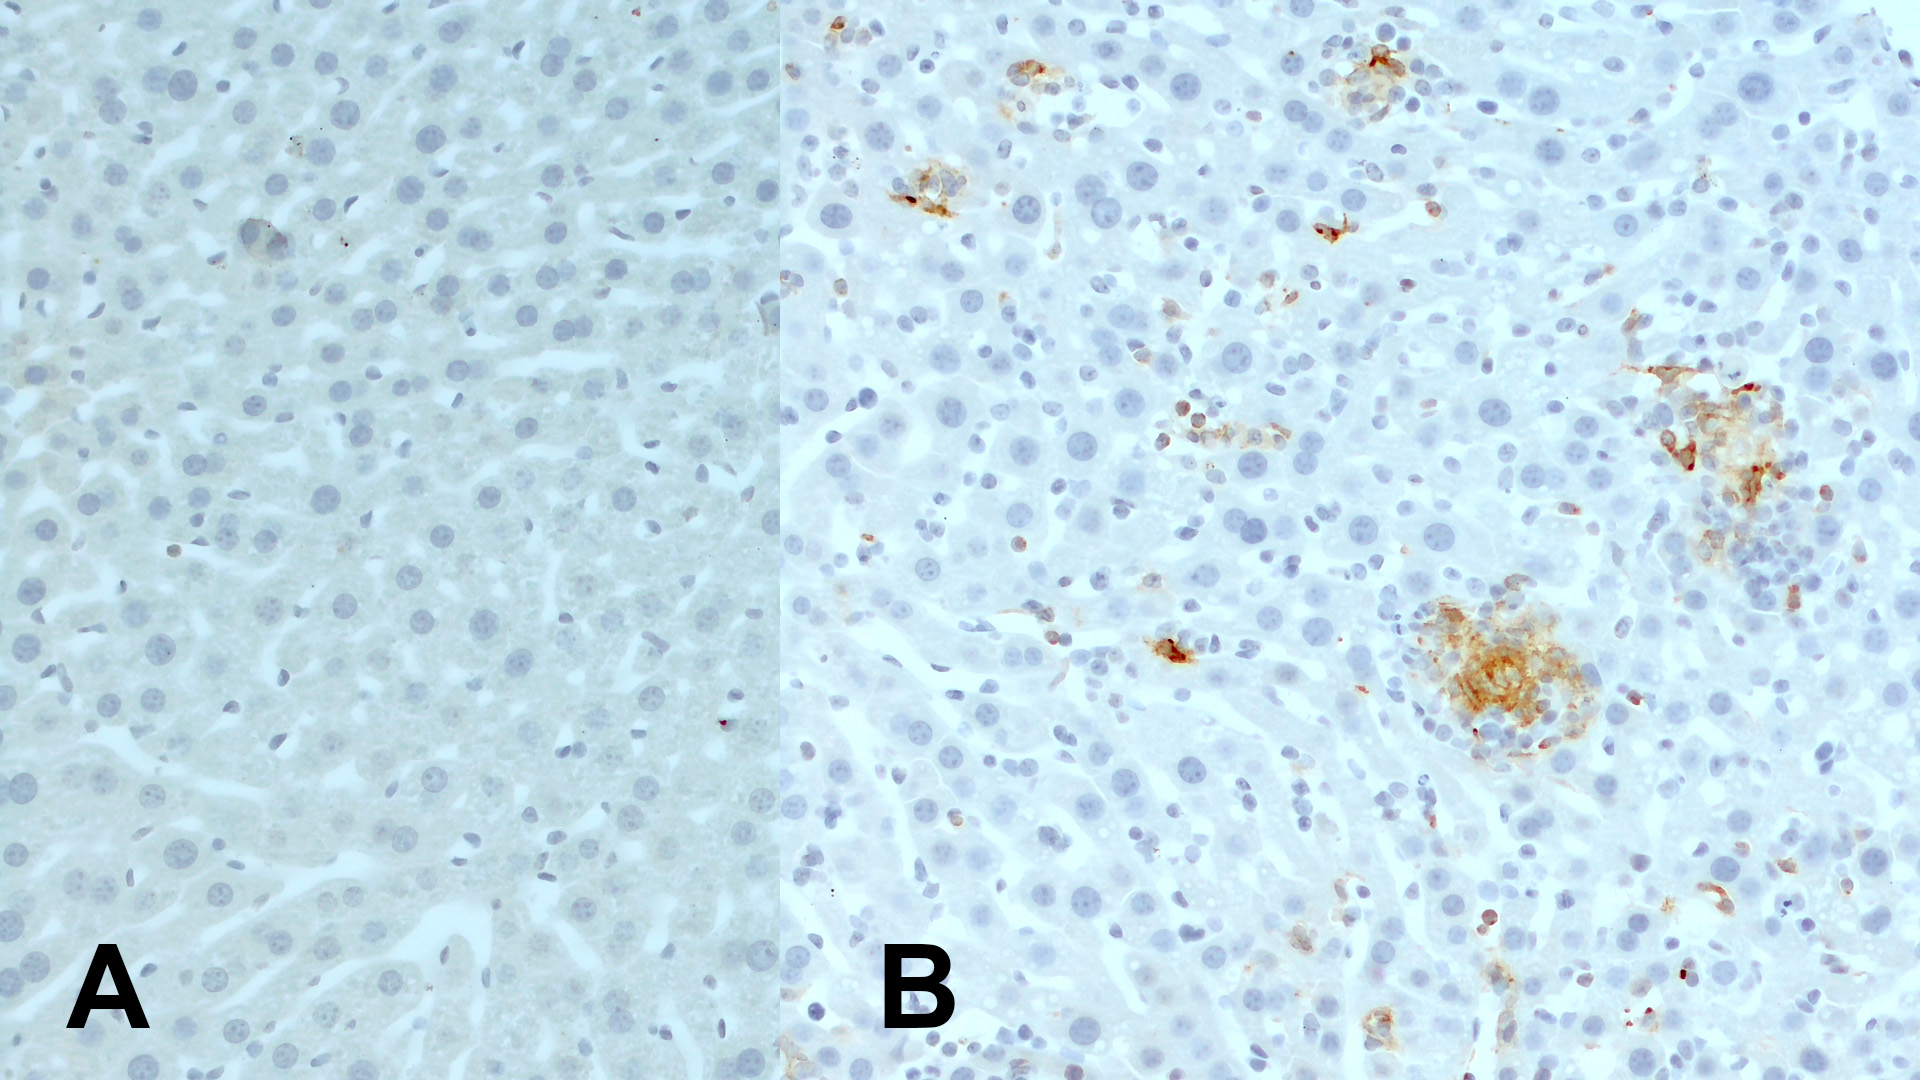 抗CD11c抗体（#HS-375003）を用いたマウス肝組織の免疫組織染色像